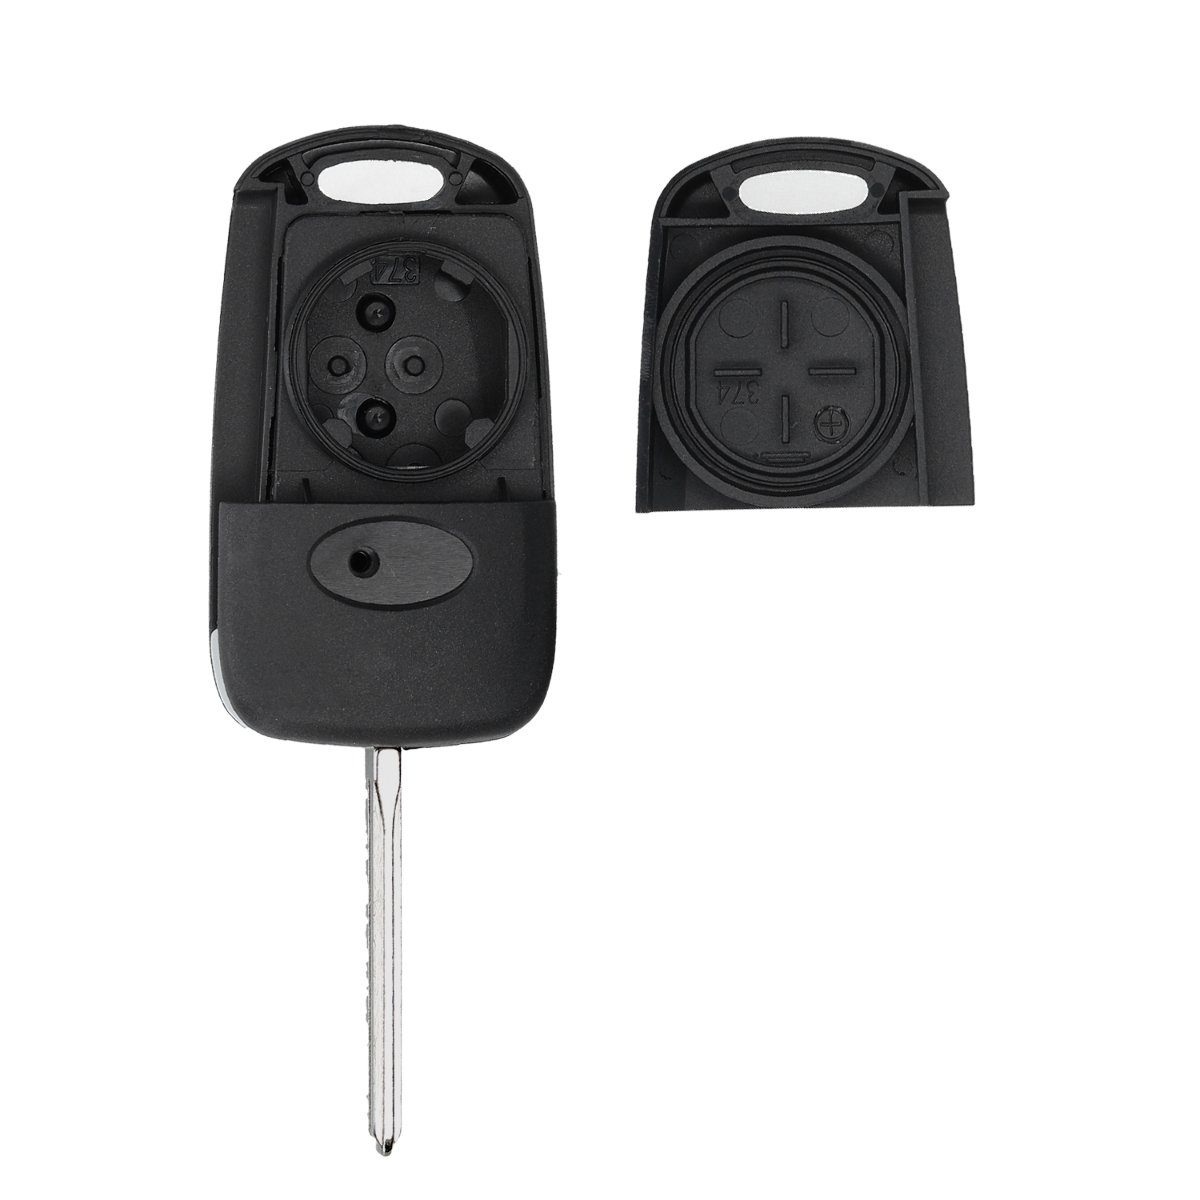 kwmobile Schlüsseltasche Gehäuse Batterien Transponder Hyundai ohne für Elektronik Auto - Autoschlüssel, Schlüsselgehäuse